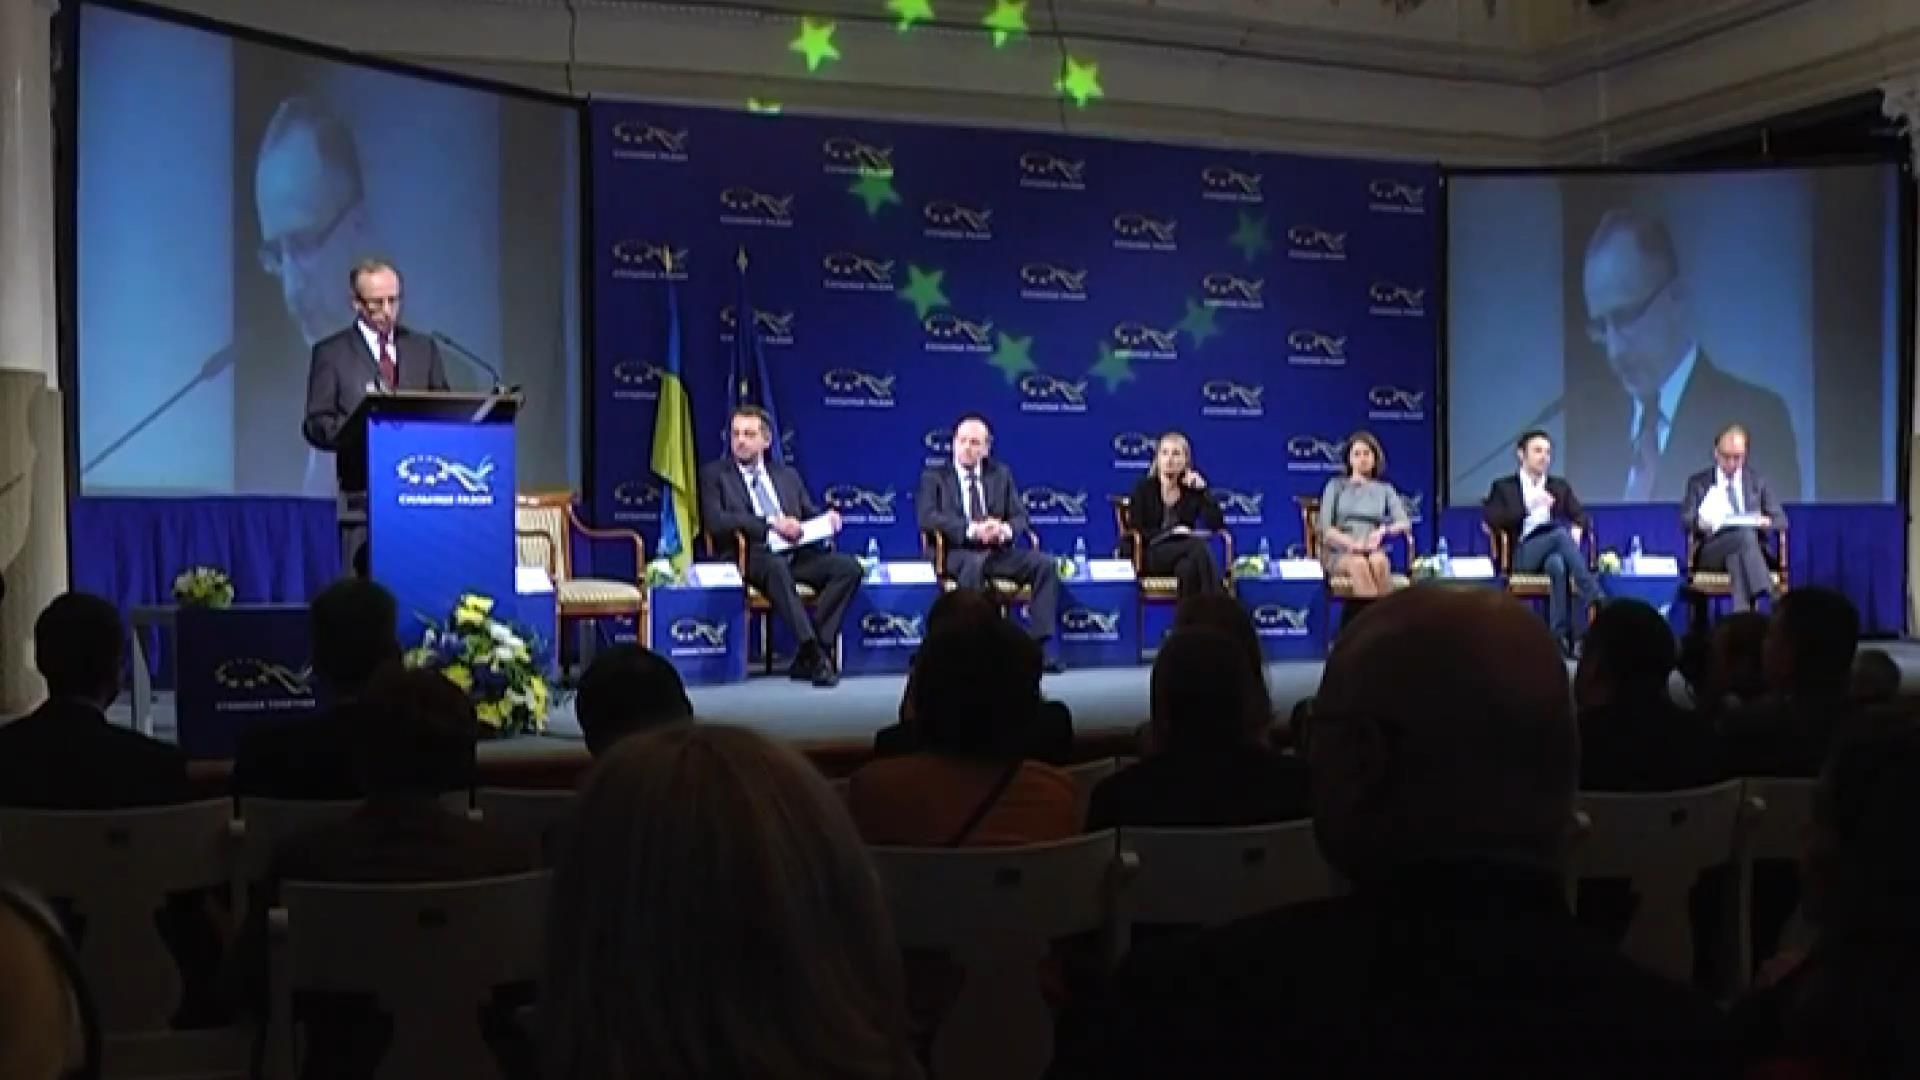 Томбинский рассказал, как можно побороть коррупцию в Украине